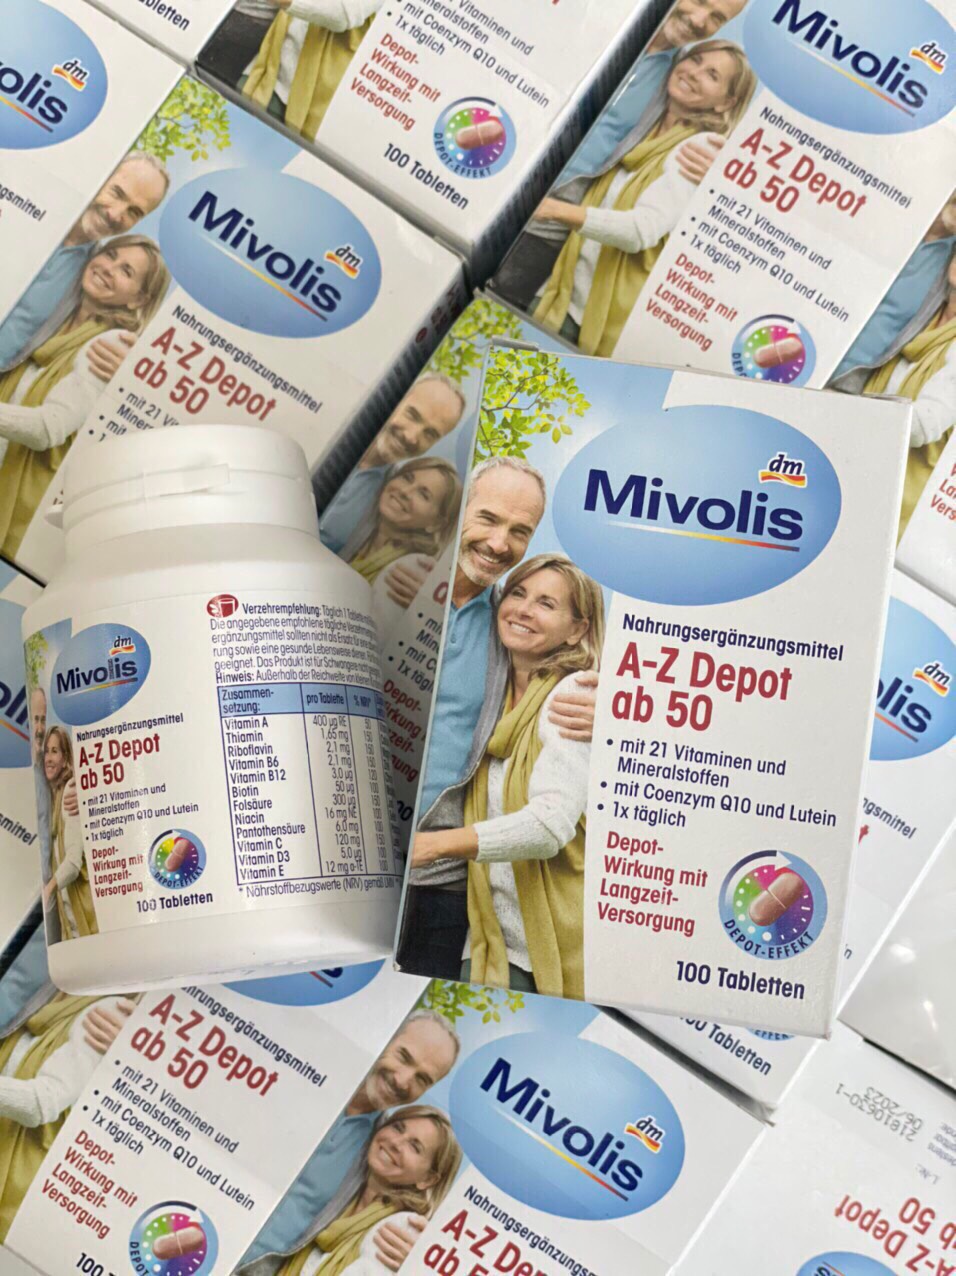 Vitamin tổng hợp A-Z Depot của Milovis dành cho người trên 50 tuổi hộp 100 thumbnail